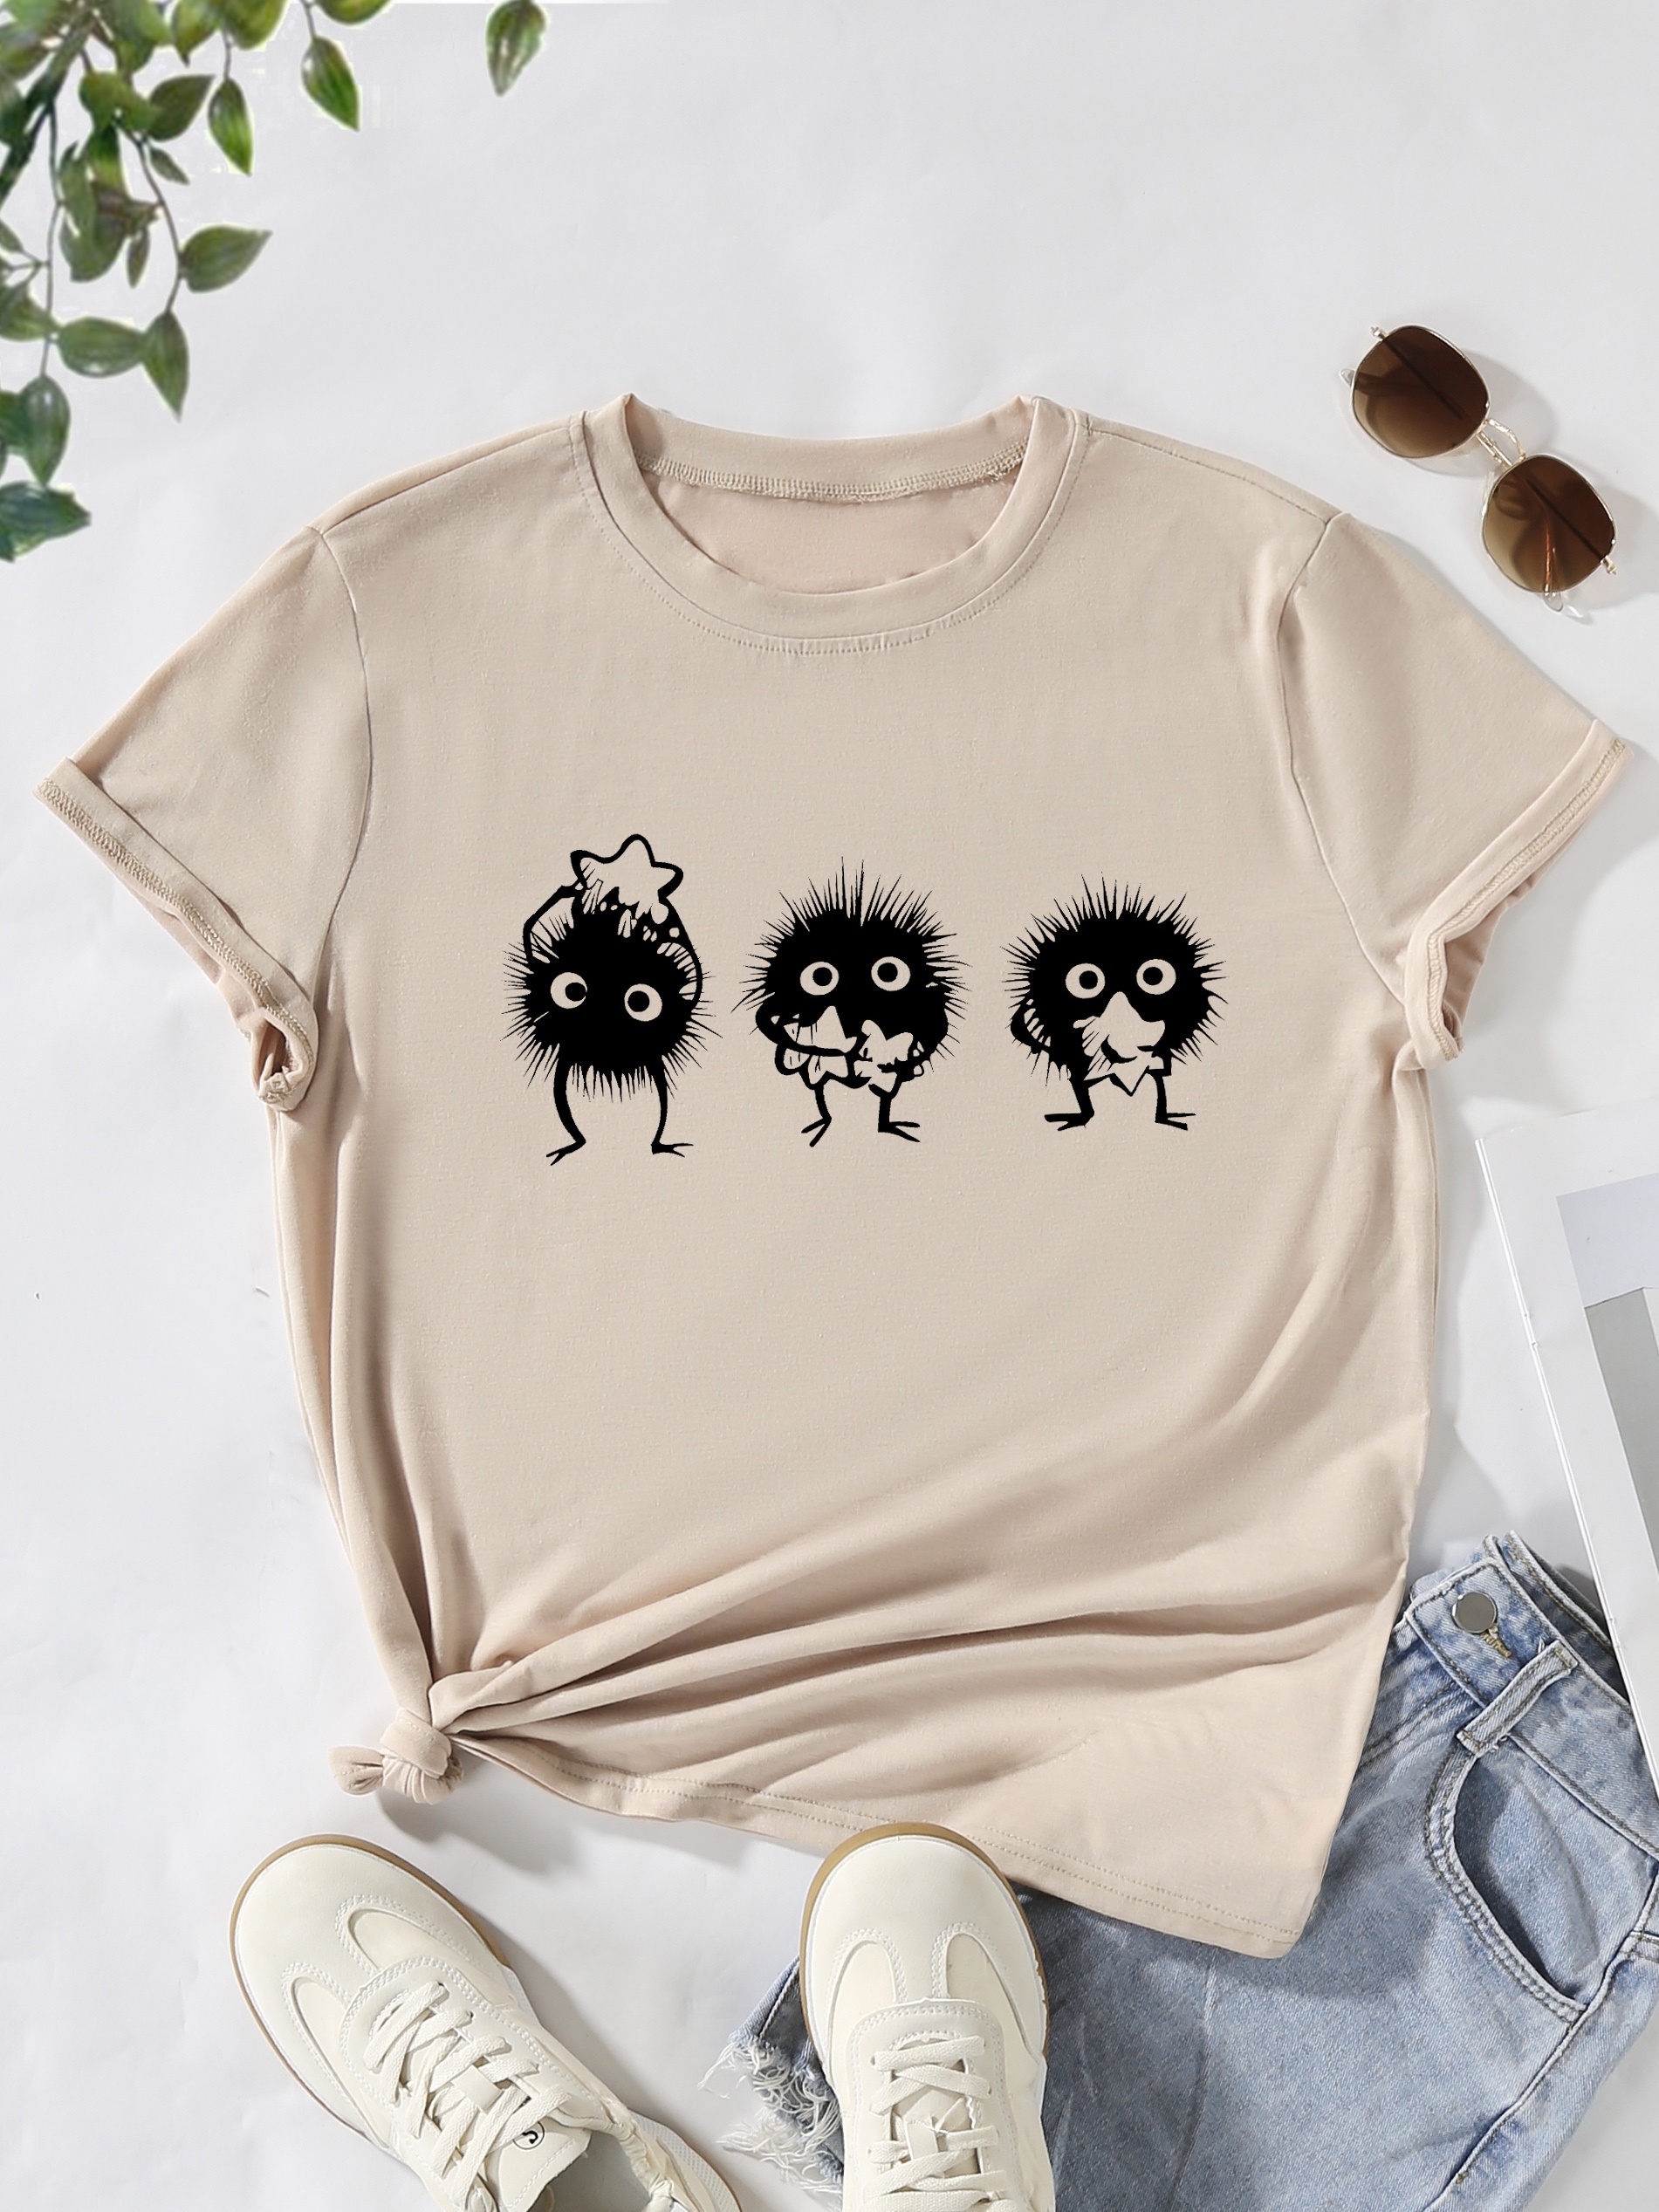 Cartoon Print Summer T-shirt, Casual Crew Neck Short Sleeve T-shirt,  Women's Clothing